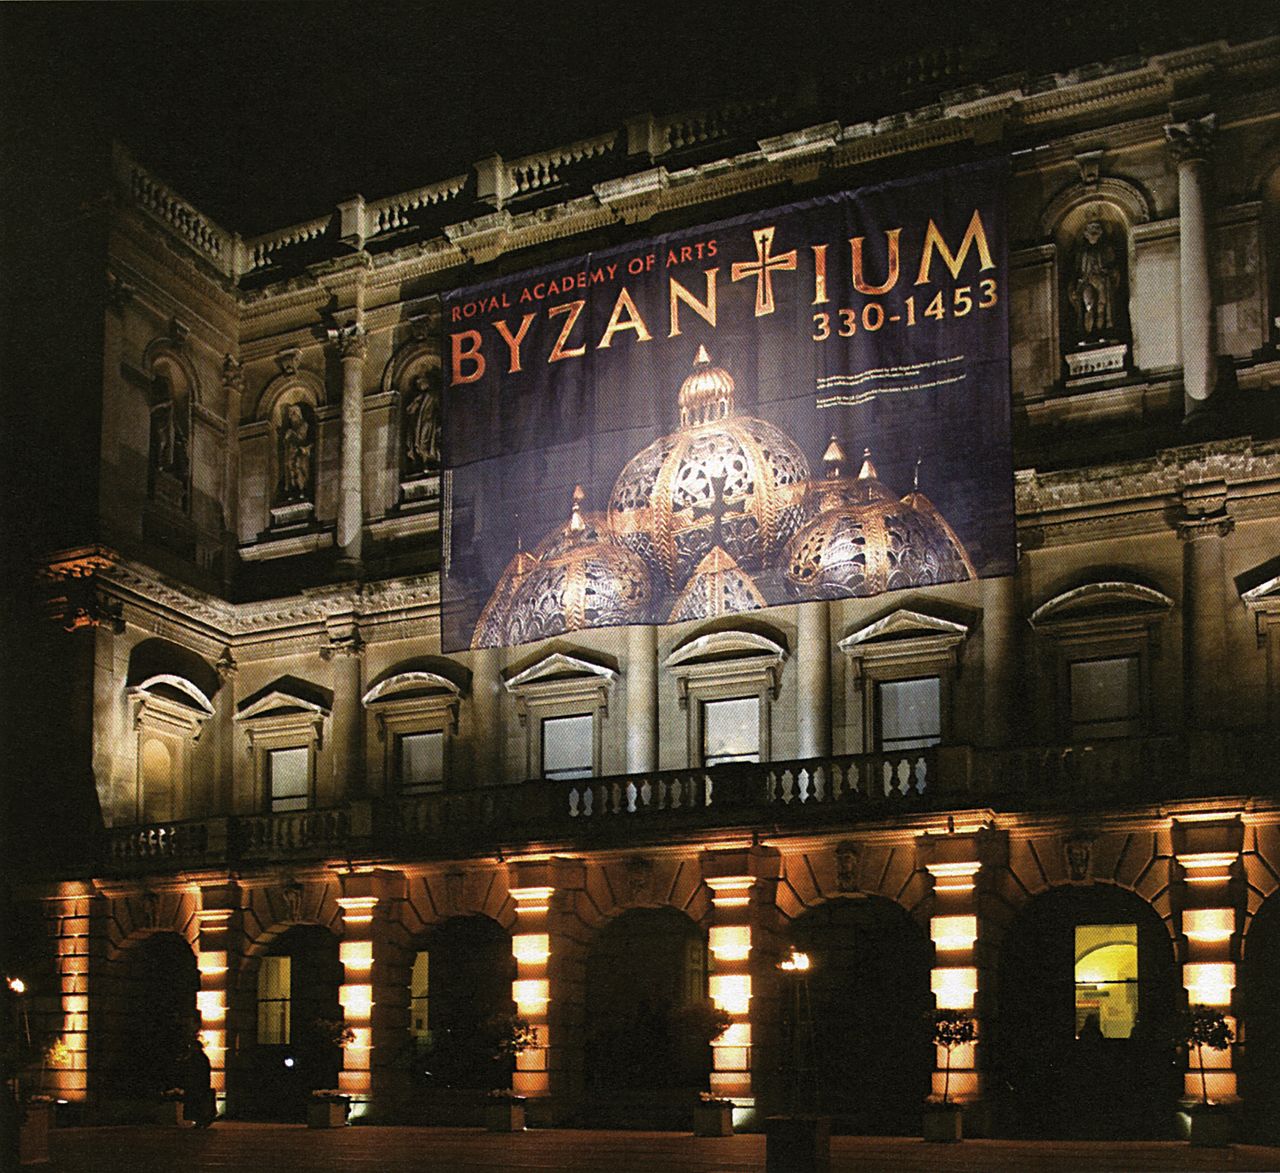 Η πρόσοψη της Royal Academy of Arts με το πανό της έκθεσης «Byzantium 330-1453», Λονδίνο, 2008-2009.